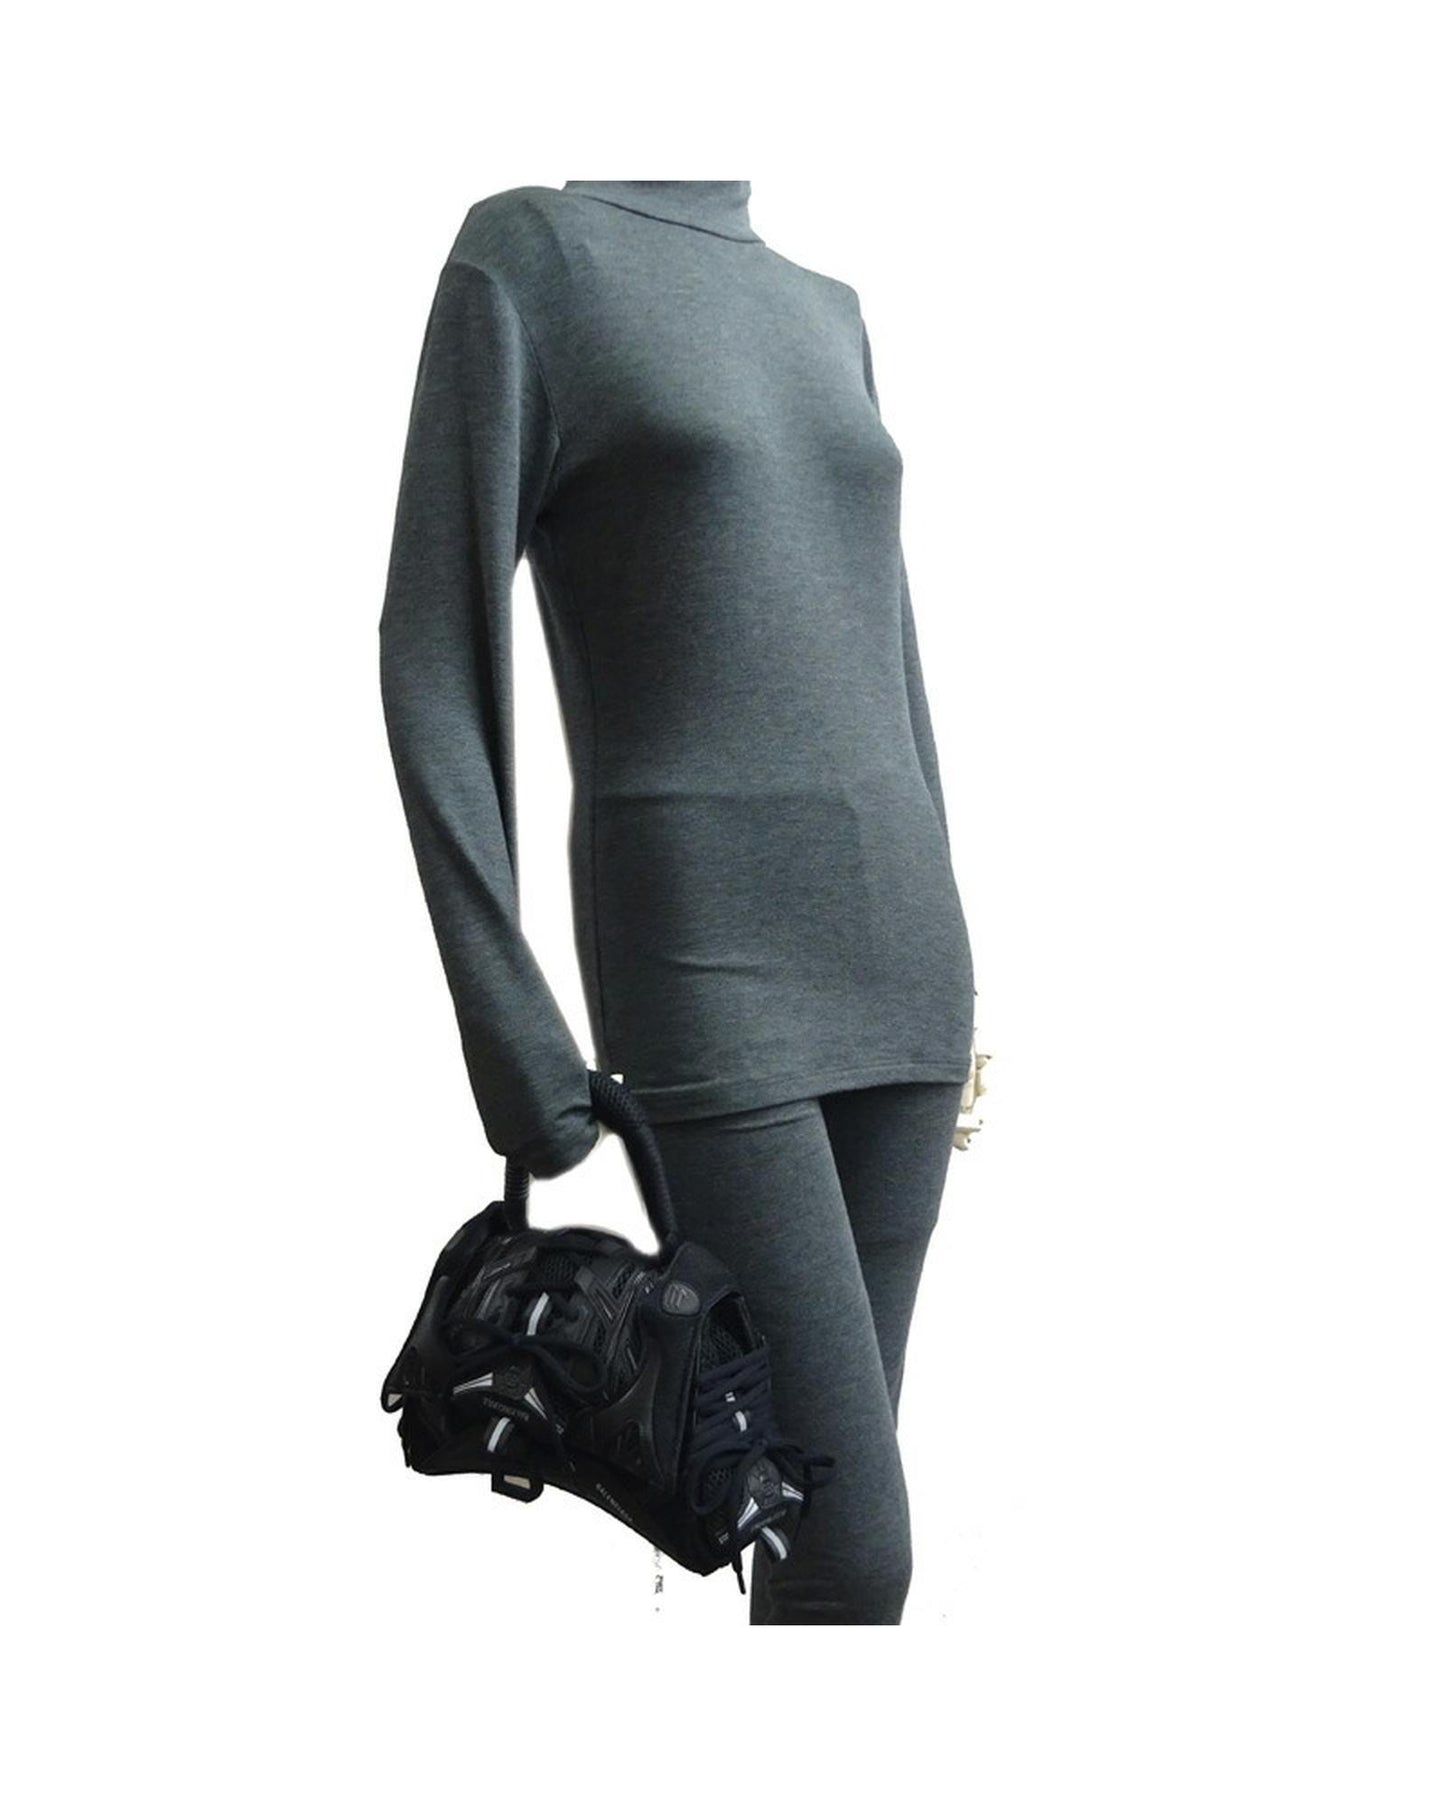 Balenciaga Women's Top Handle Black Leather Designer Bag by Balenciaga in Black